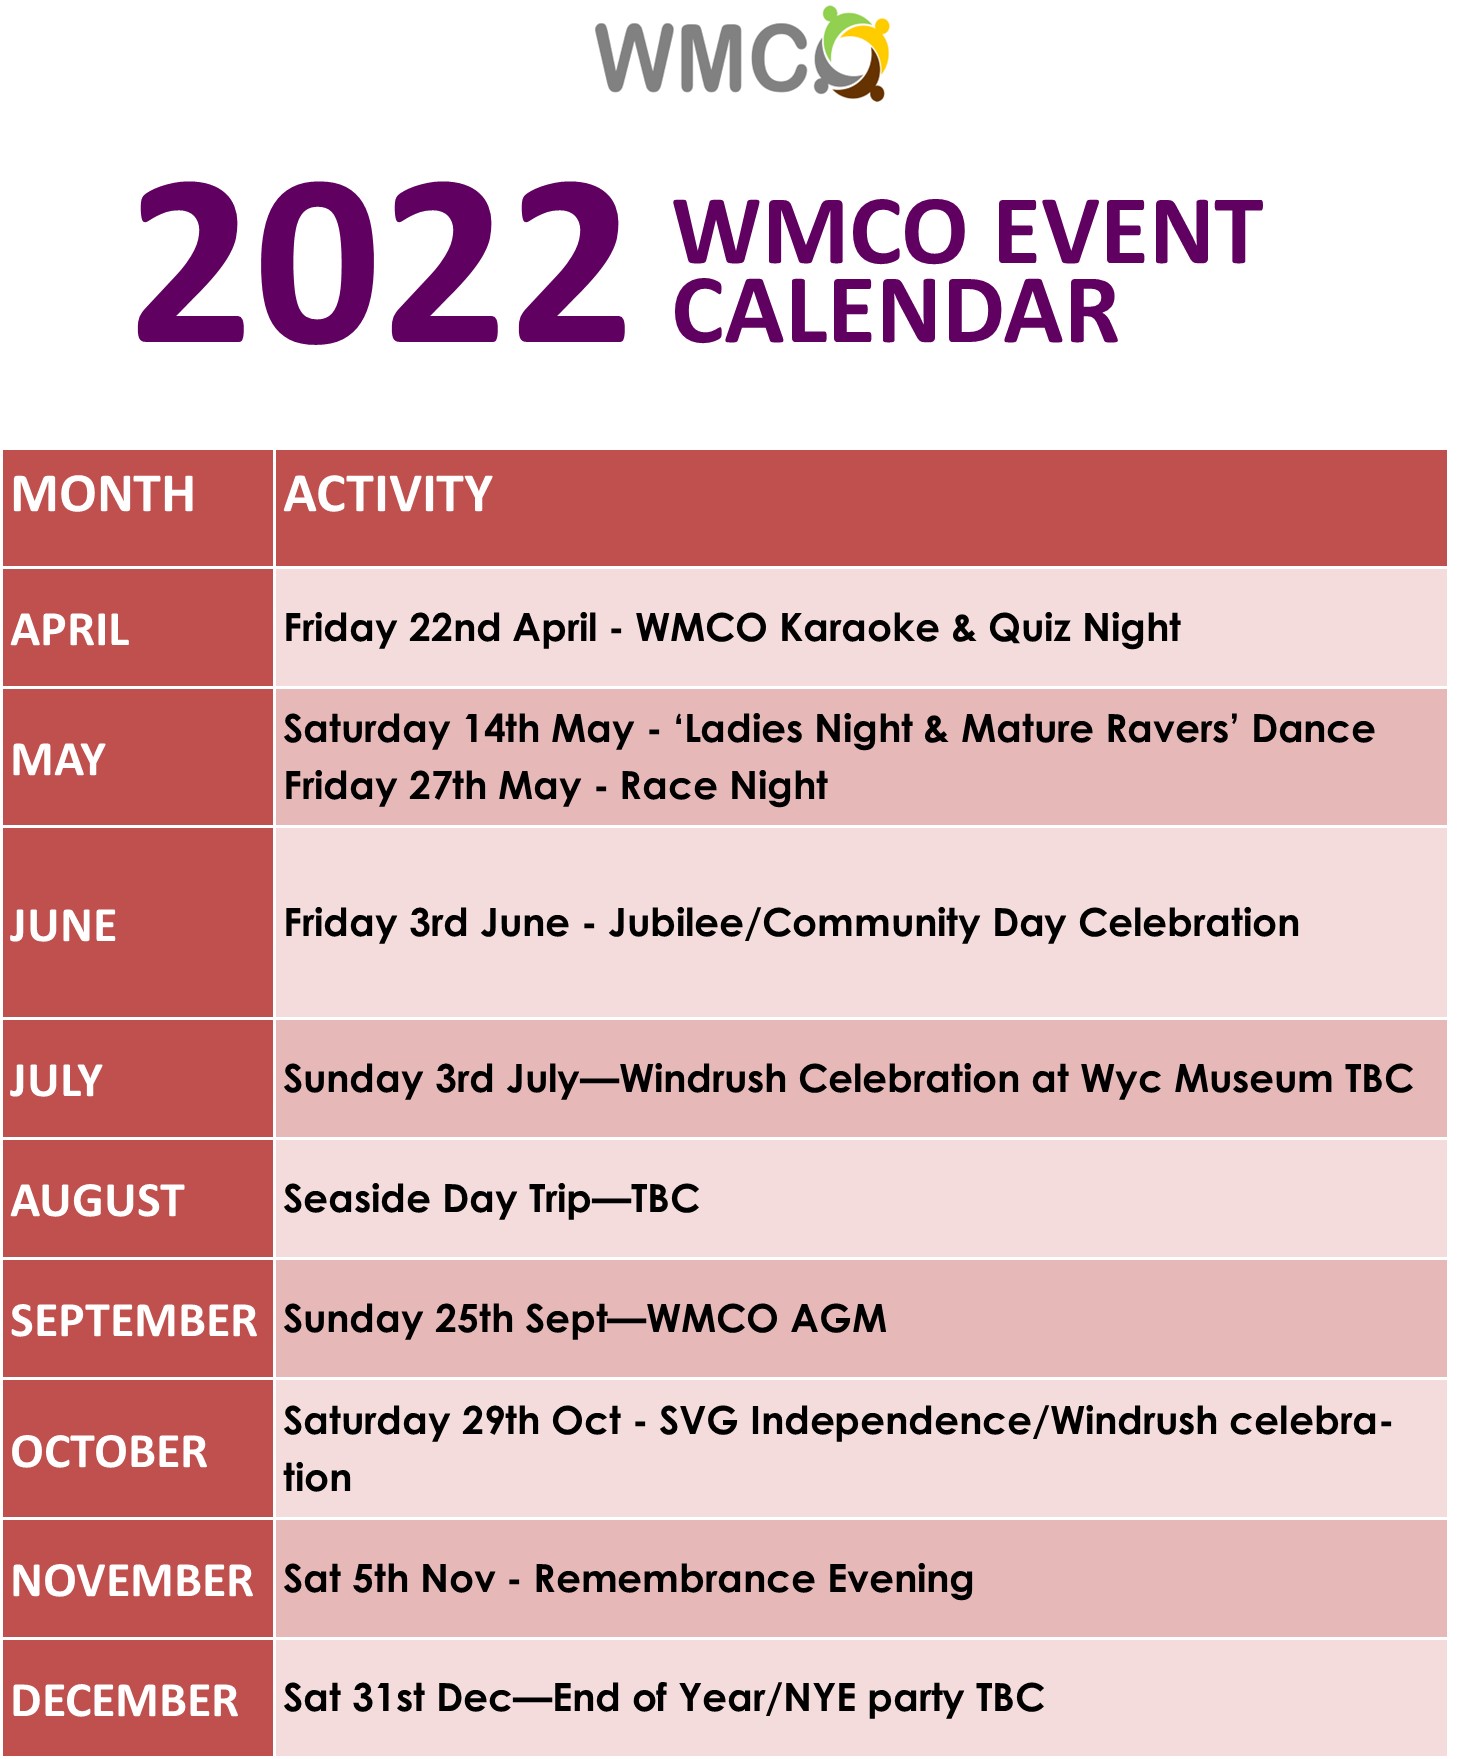 WMCO Event Calendar 2022